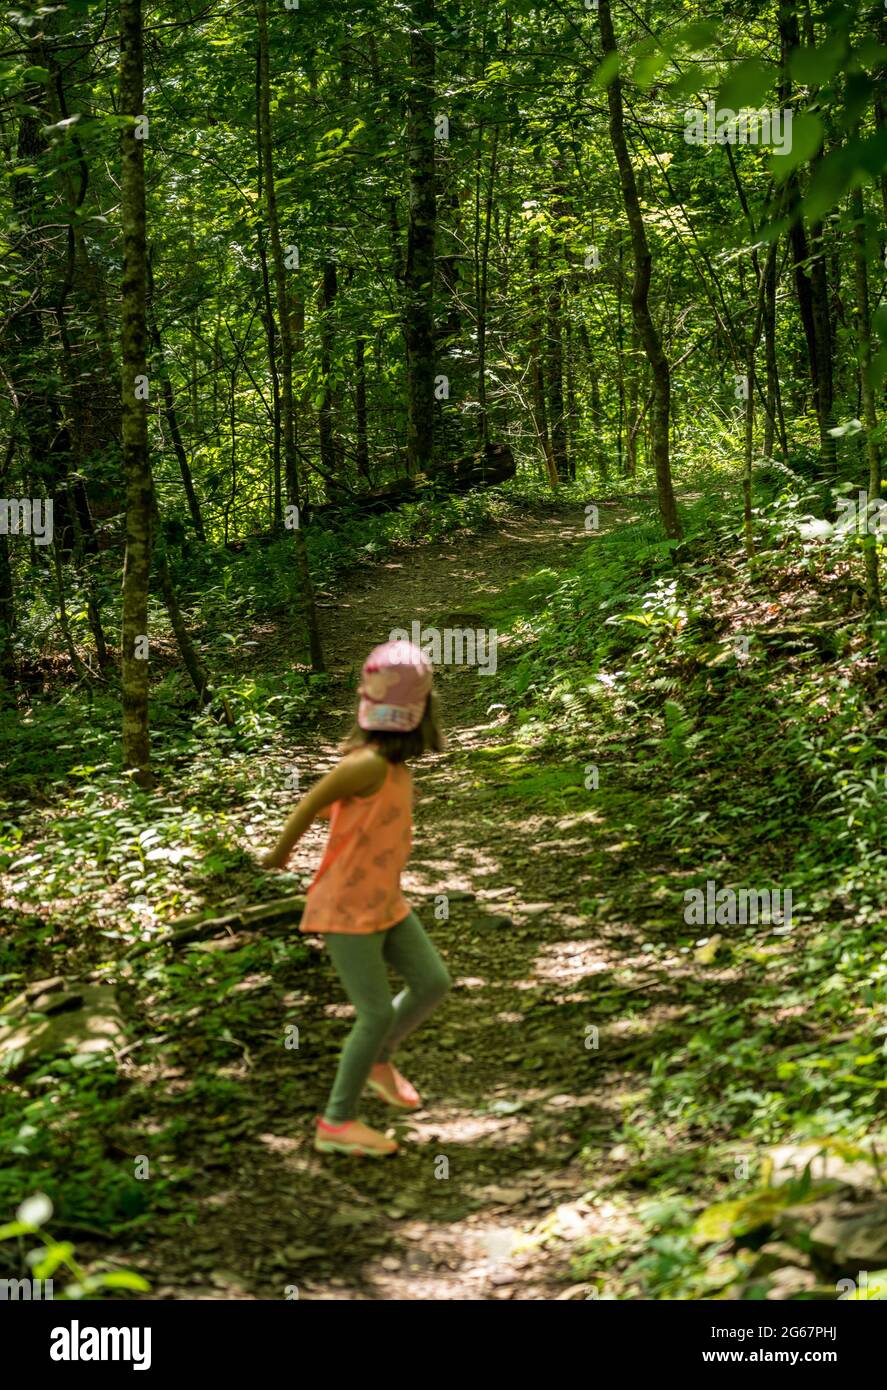 Kleines kaukasisches Mädchen, das Angst hat, dass jemand ihr in einem Wald folgt und auf dem Weg auf ihren Stalker zurückblickt Stockfoto